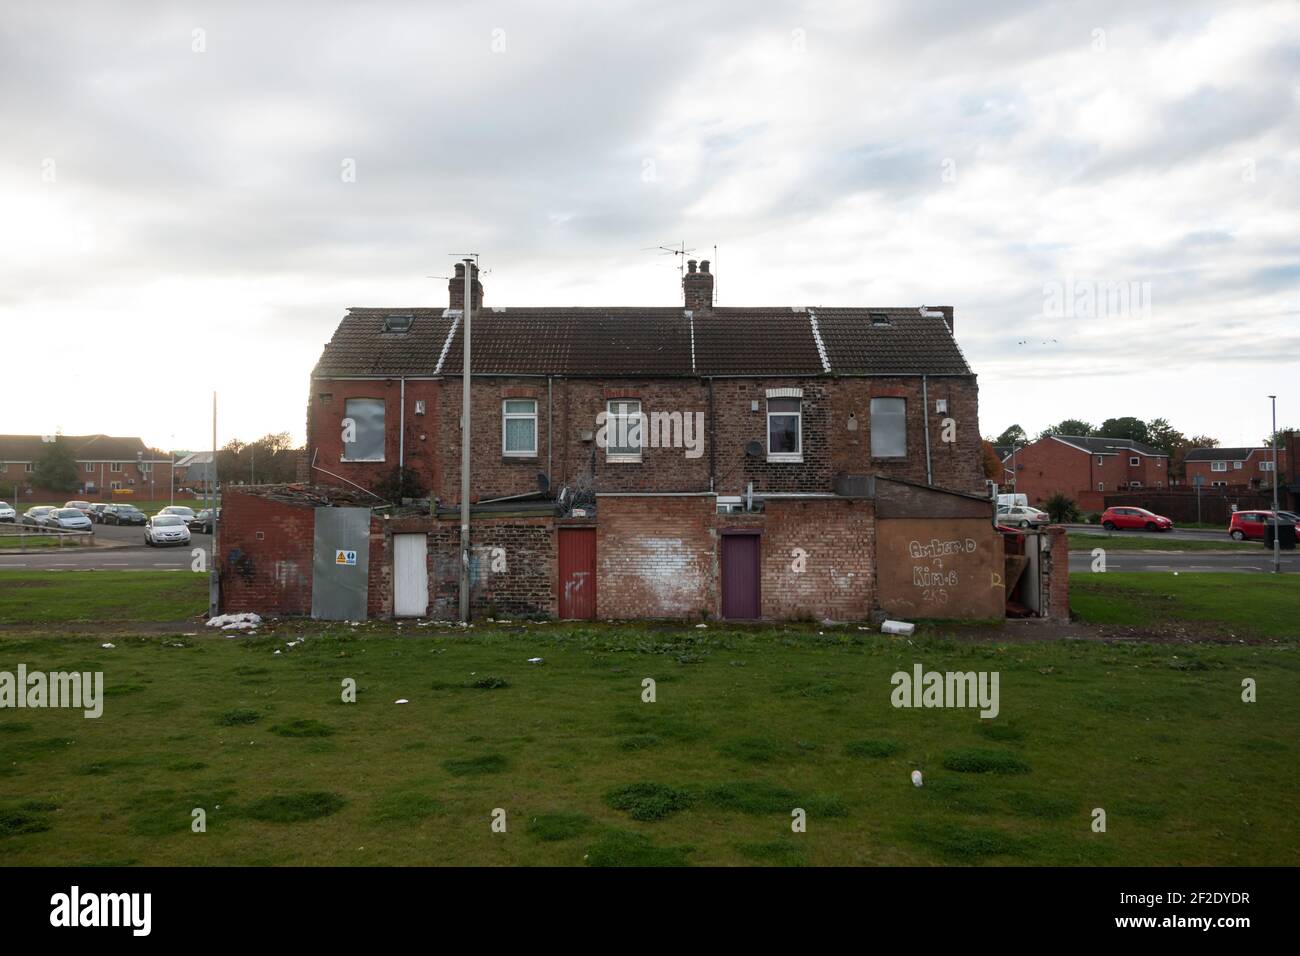 Se embarcaron viviendas en espera de demolición en Gresham, Middlesbrough. Foto de stock